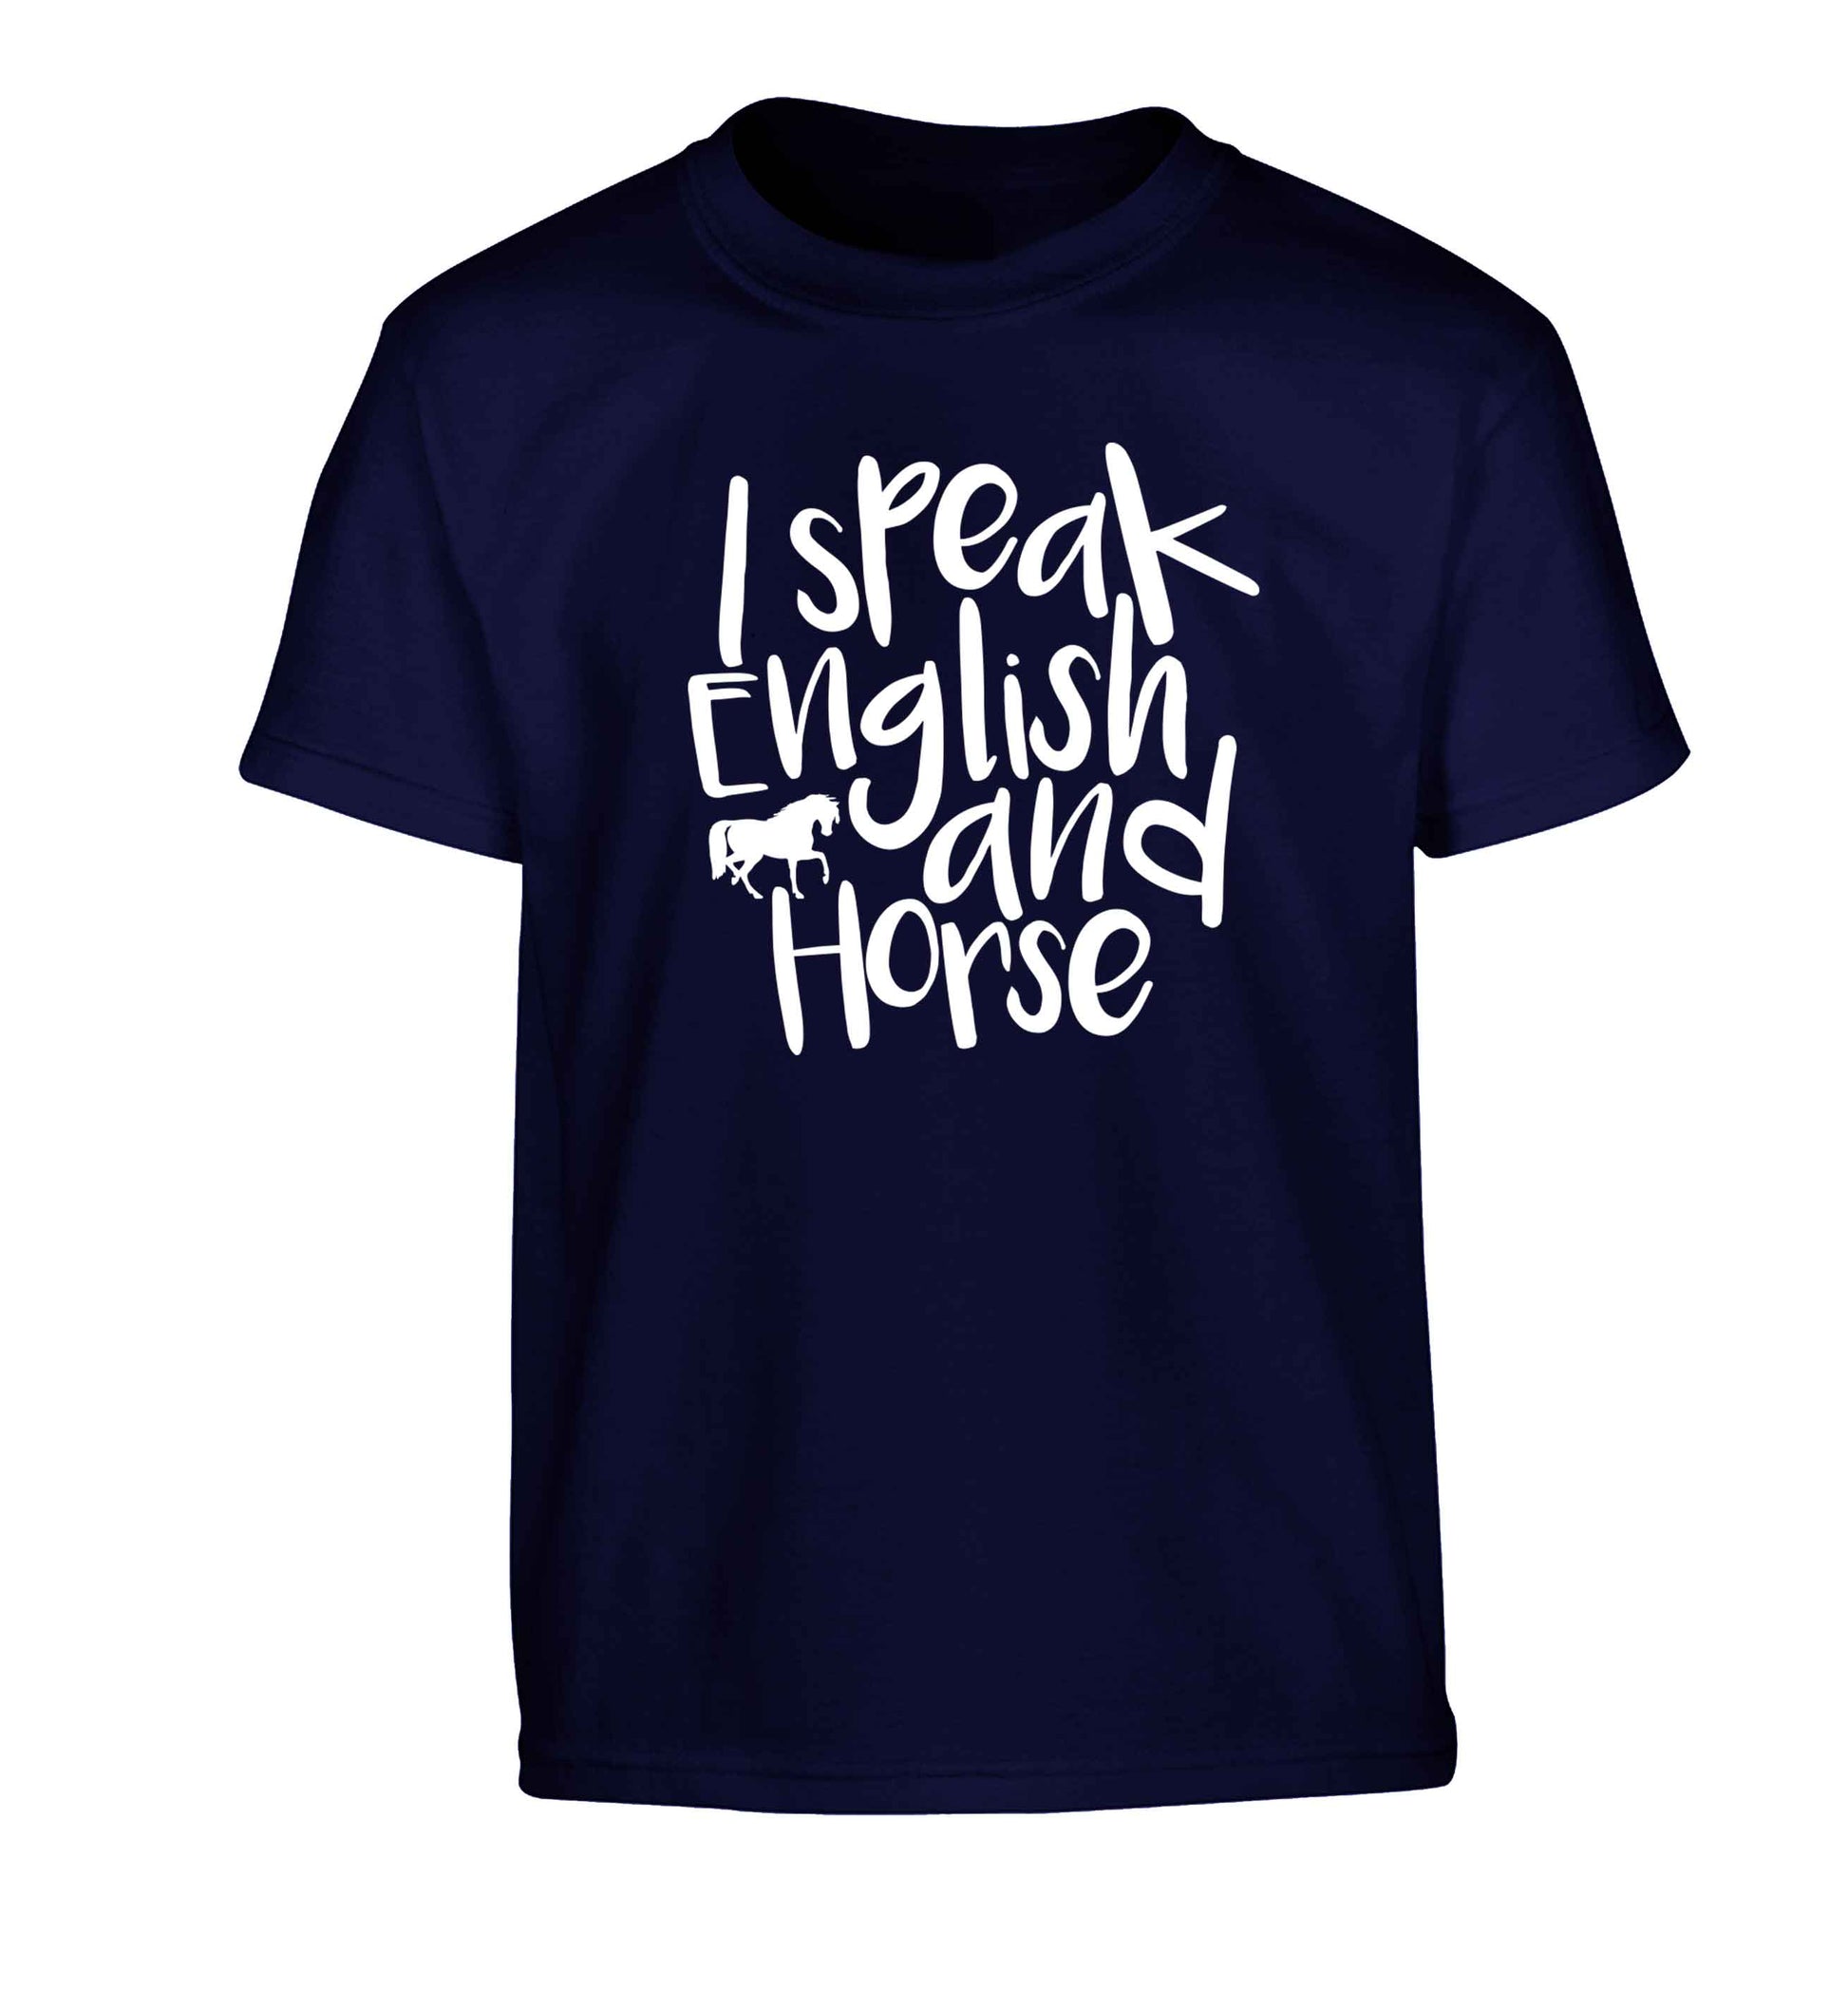 I speak English and horse Children's navy Tshirt 12-13 Years